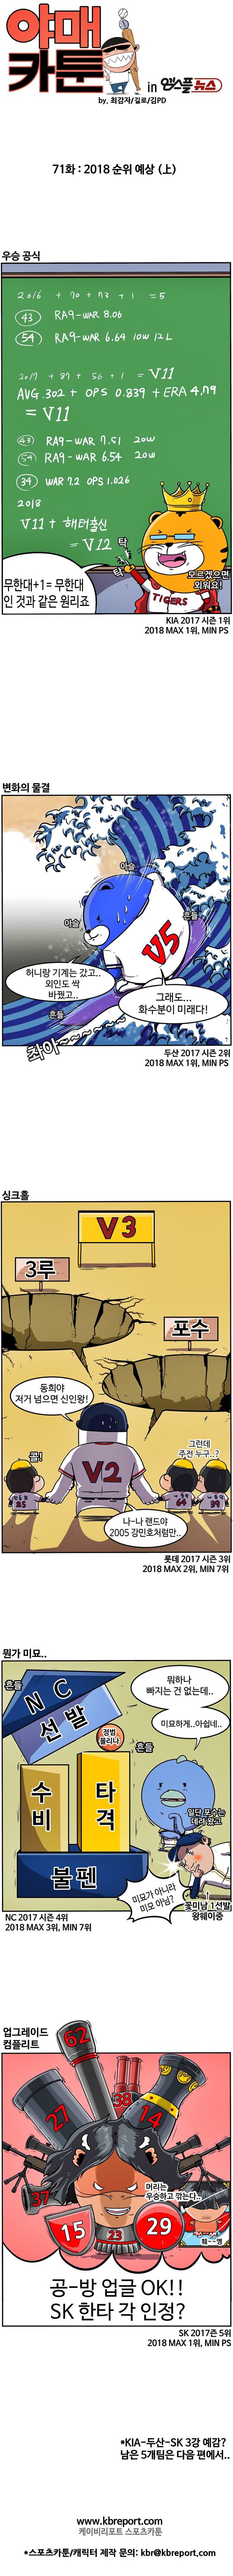 출처: [KBO 야매카툰] 2018시즌, KIA-두산-SK가 3강?